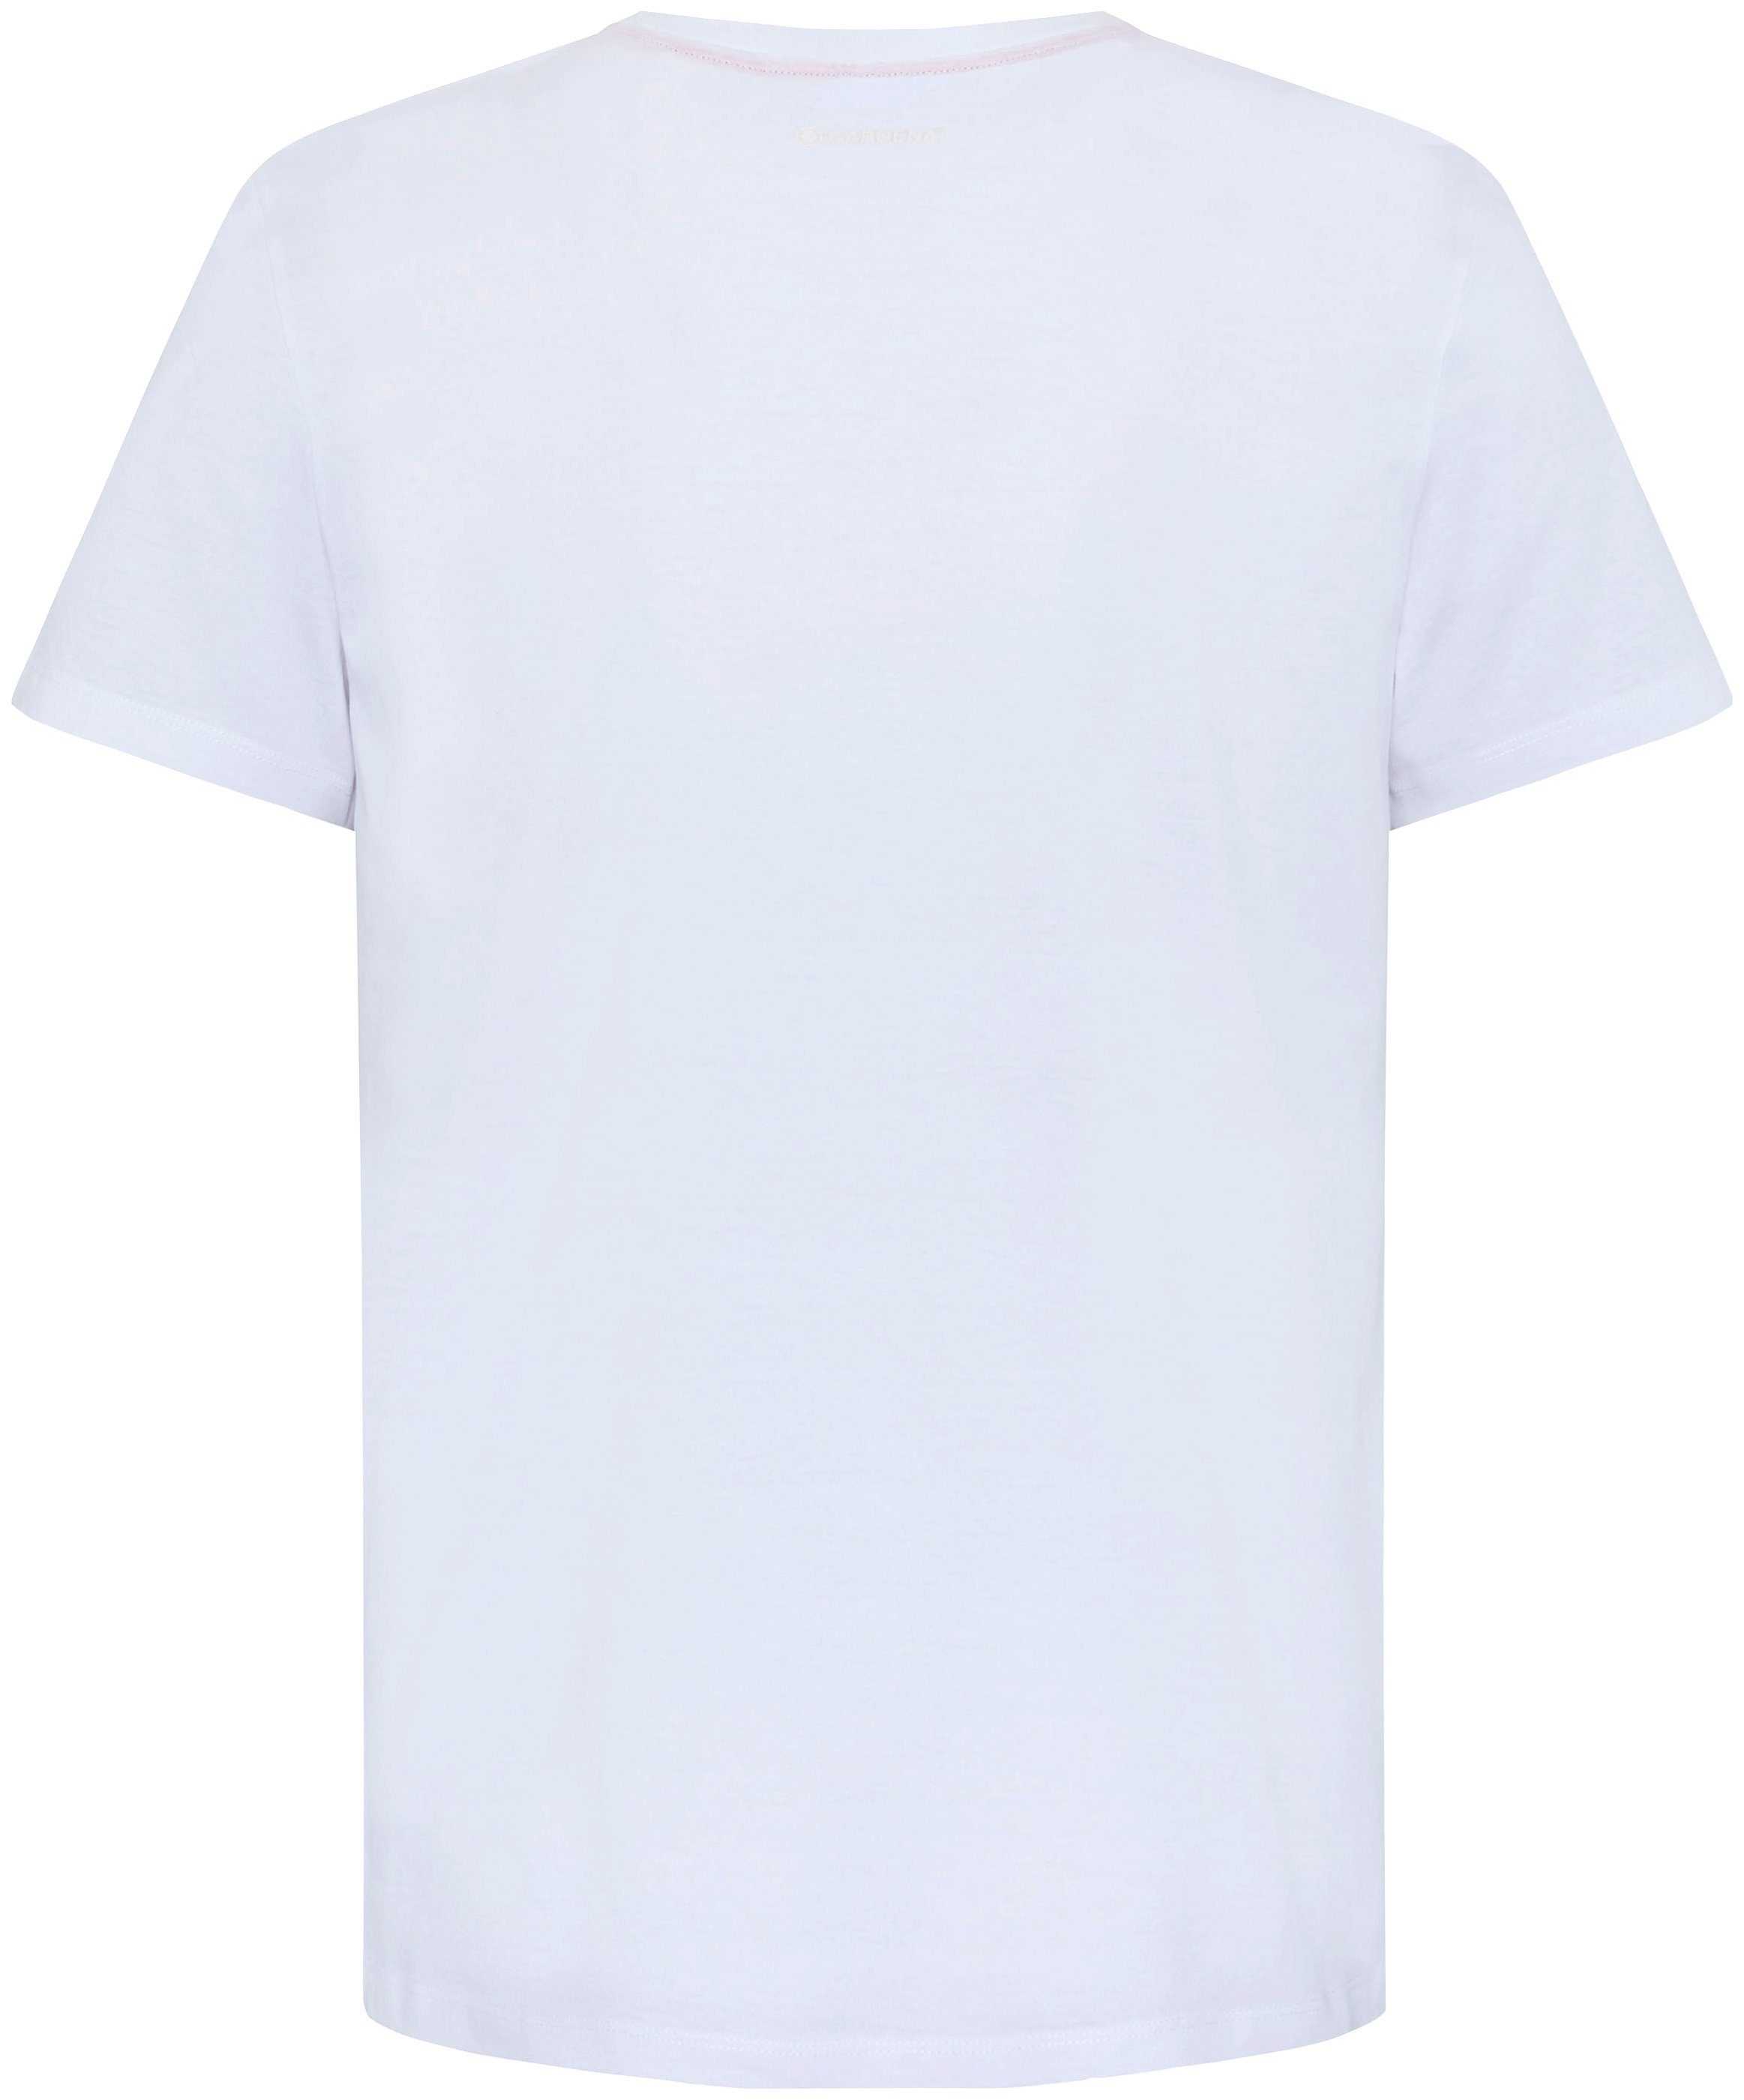 GARDENA T-Shirt Bright Aufdruck mit White